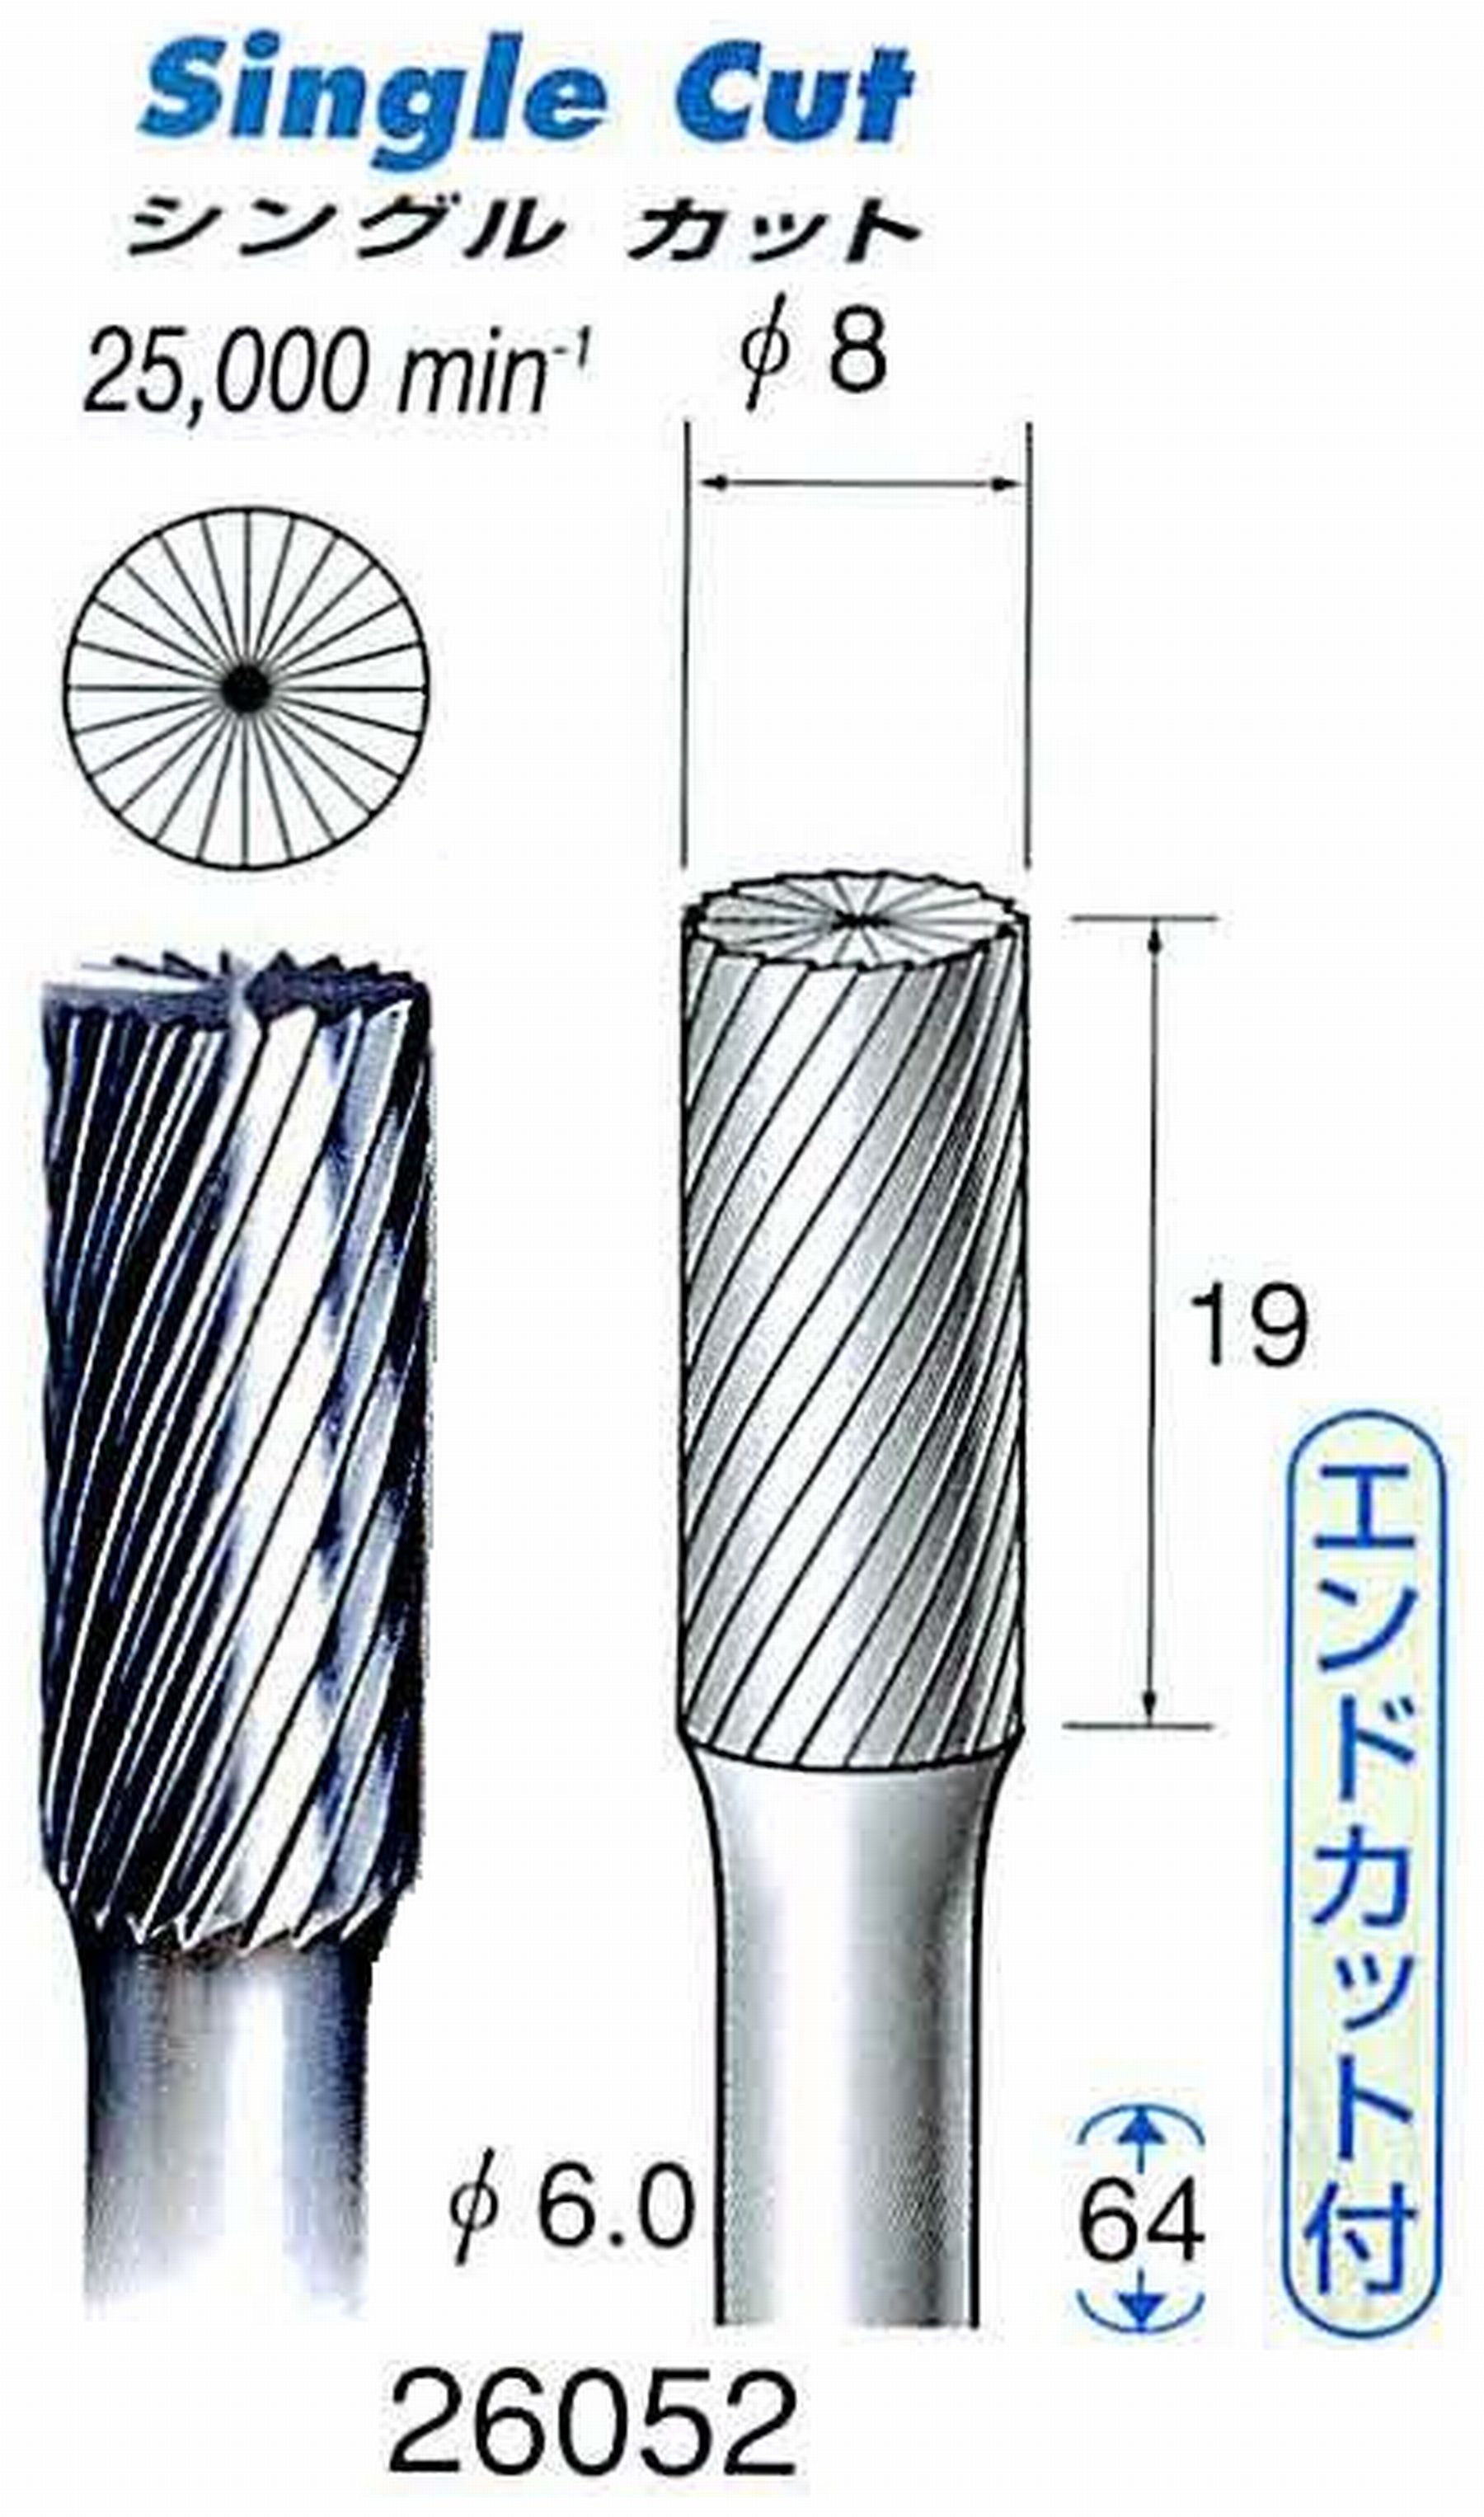 ナカニシ/NAKANISHI 超硬カッター(エンドカット付) 軸径(シャンク)φ6.0mm 26052